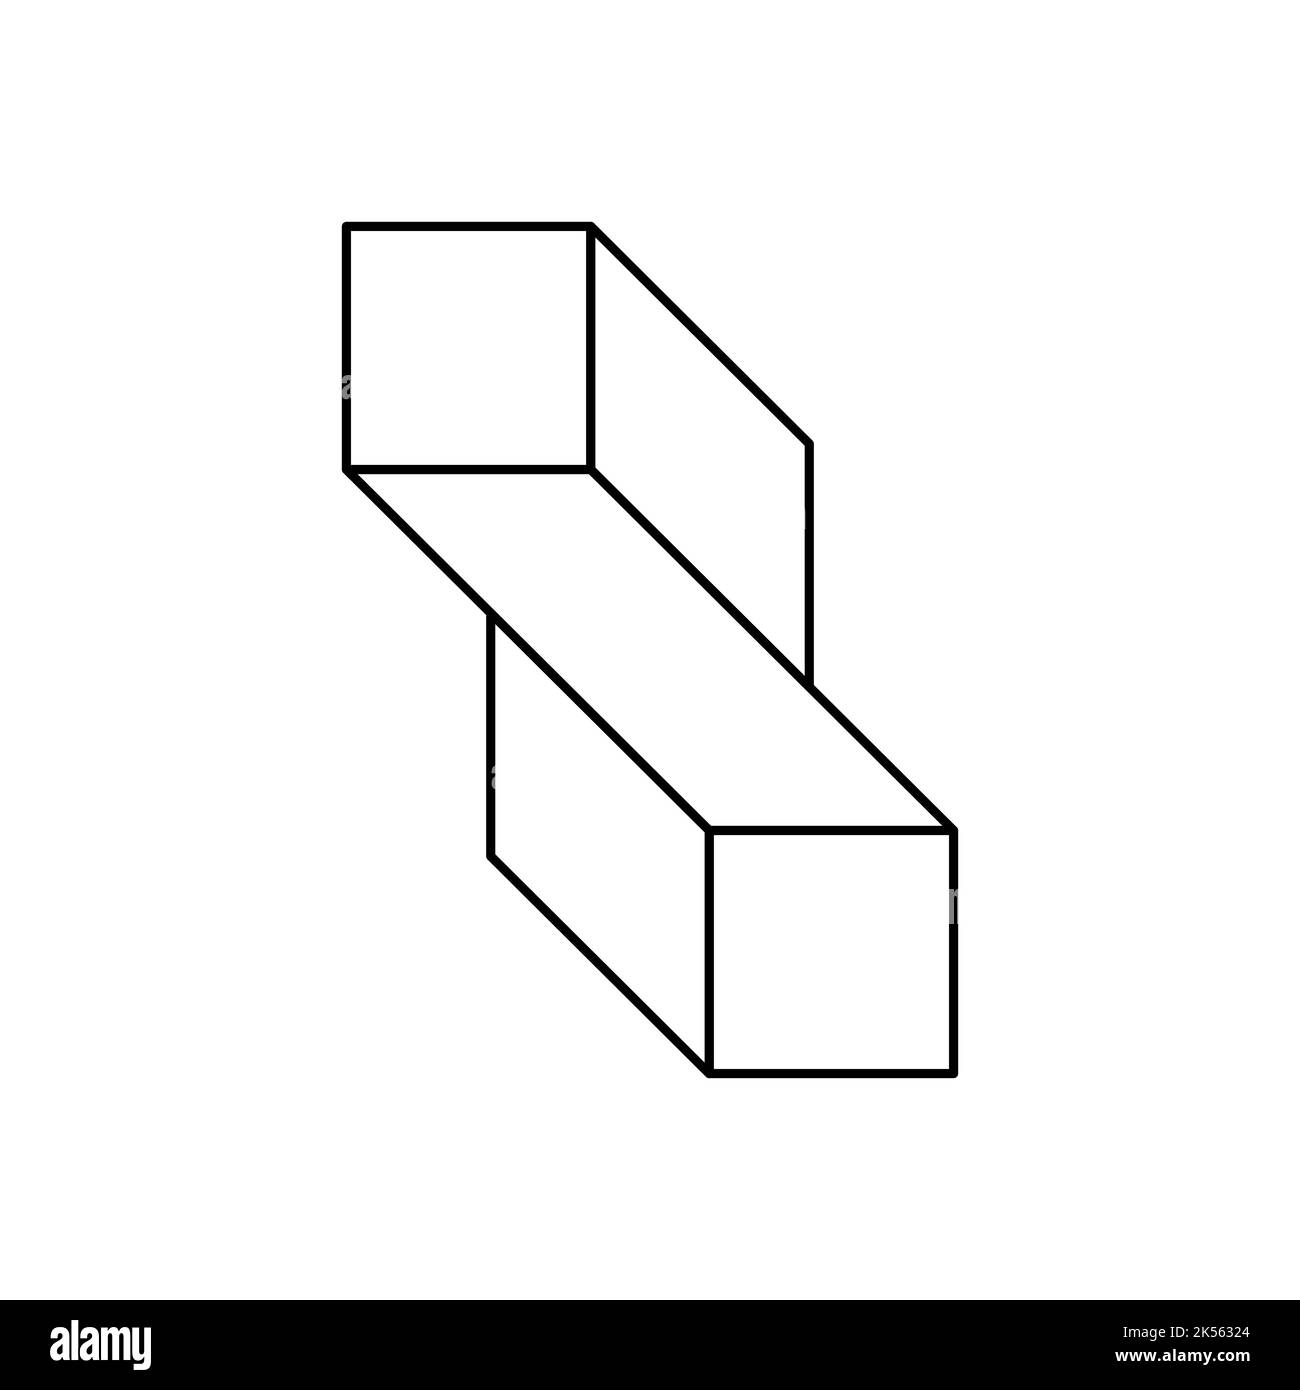 Forma rettangolare intrecciata impossibile. Figura geometrica di Esher penrose. Illusione ottica, effetto visivo, trucco mentale. Oggetto 3D irreale. Due cubi collegati Illustrazione Vettoriale